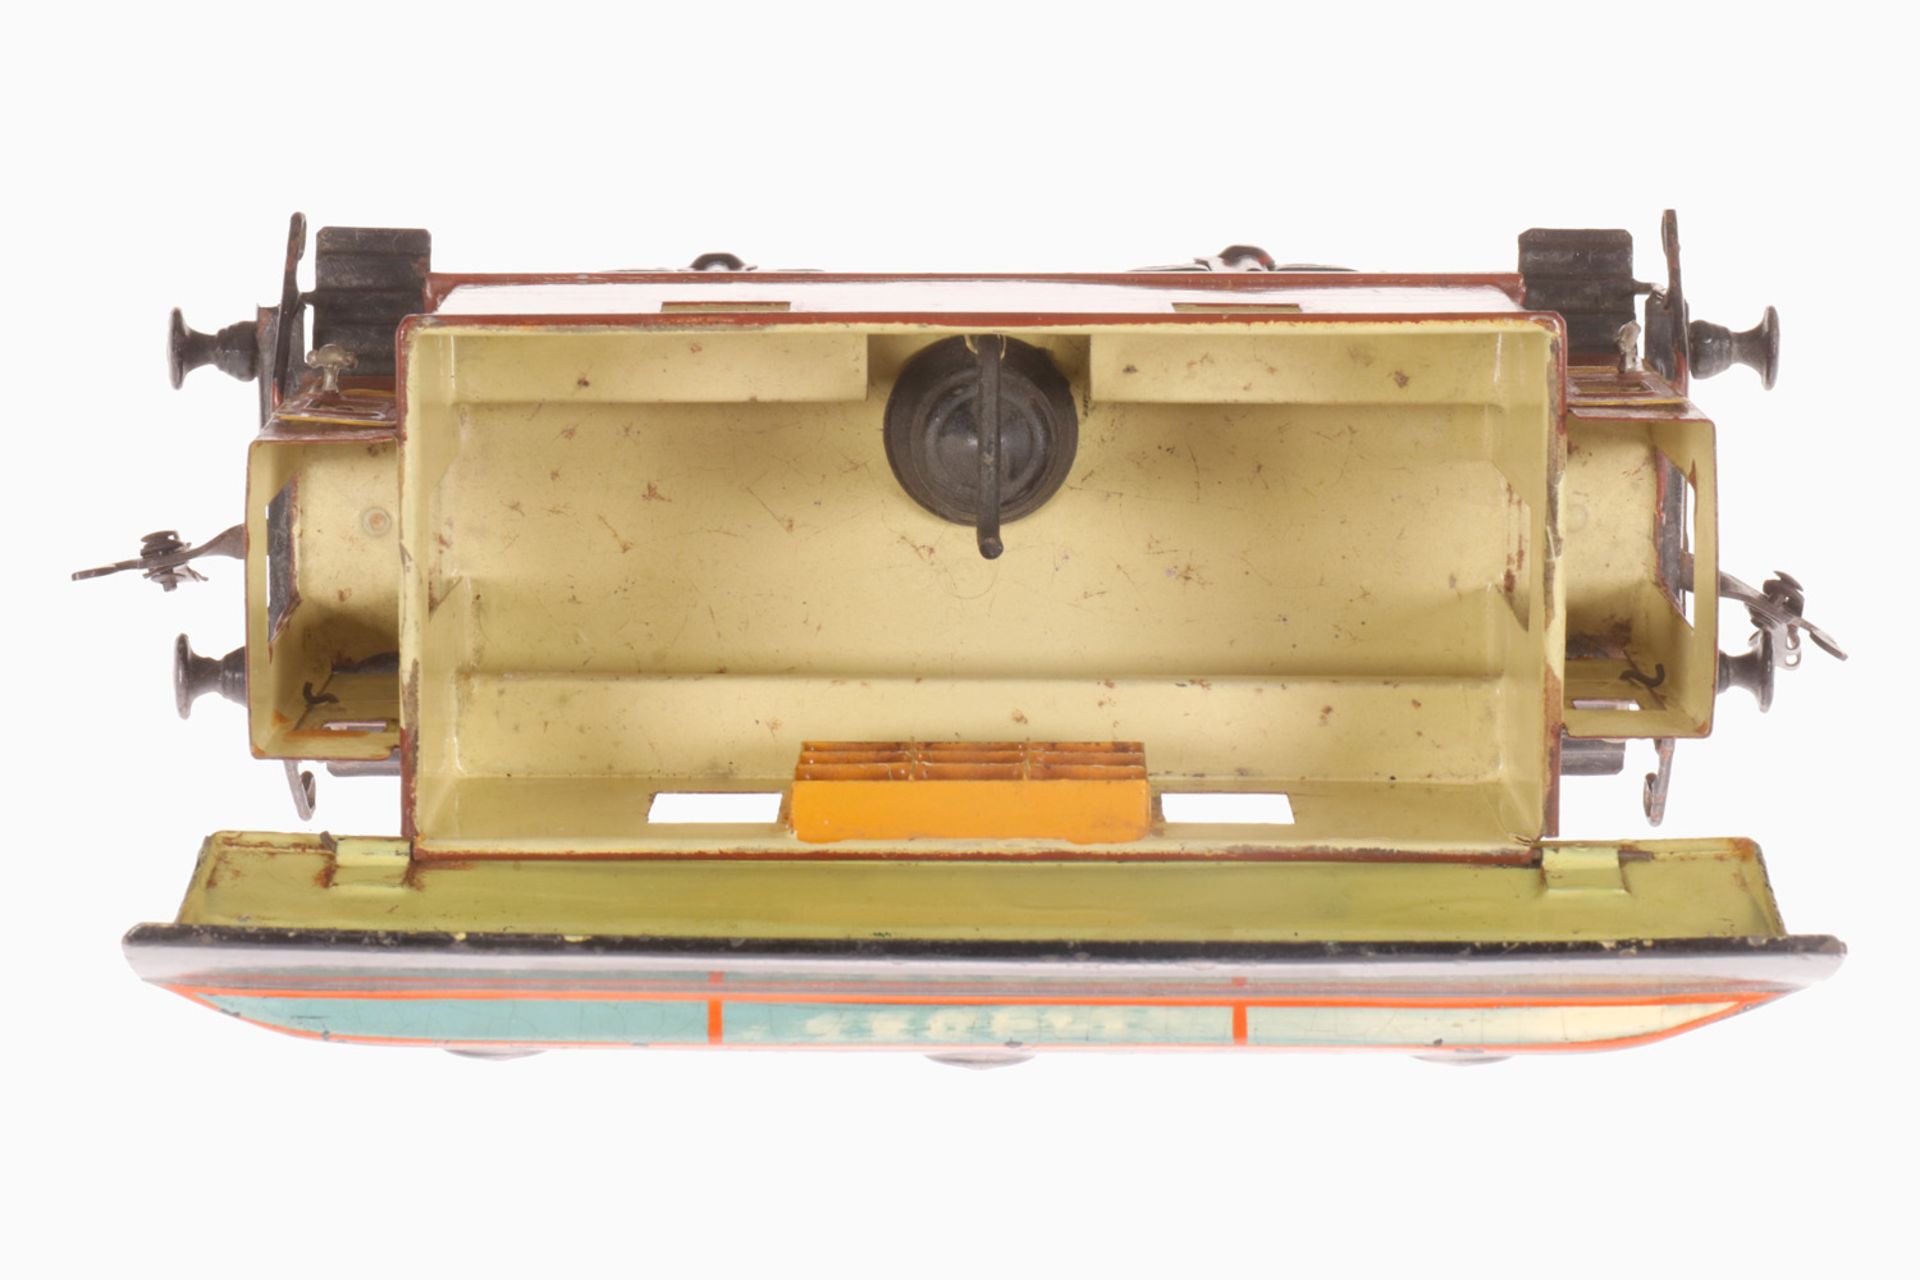 Märklin franz. Postwagen 1829, S 1, uralt, braun handlackiert, franz. Aufschrift, mit Ofen und - Bild 2 aus 2